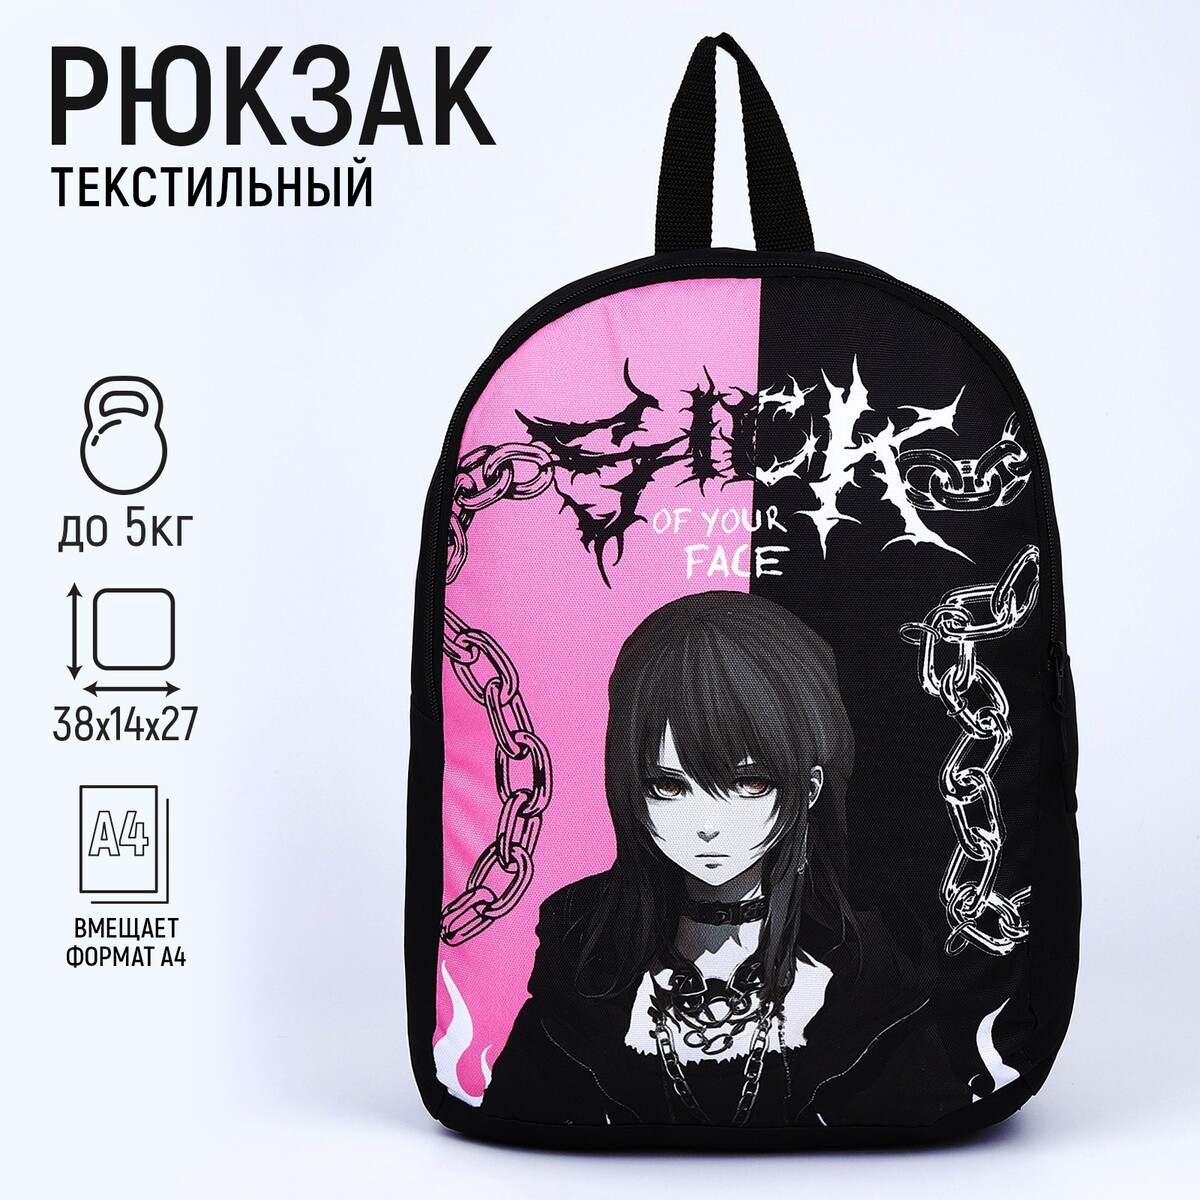 Рюкзак текстильный аниме, 38х14х27 см, цвет черный, розовый рюкзак текстильный корги 38х14х27 см